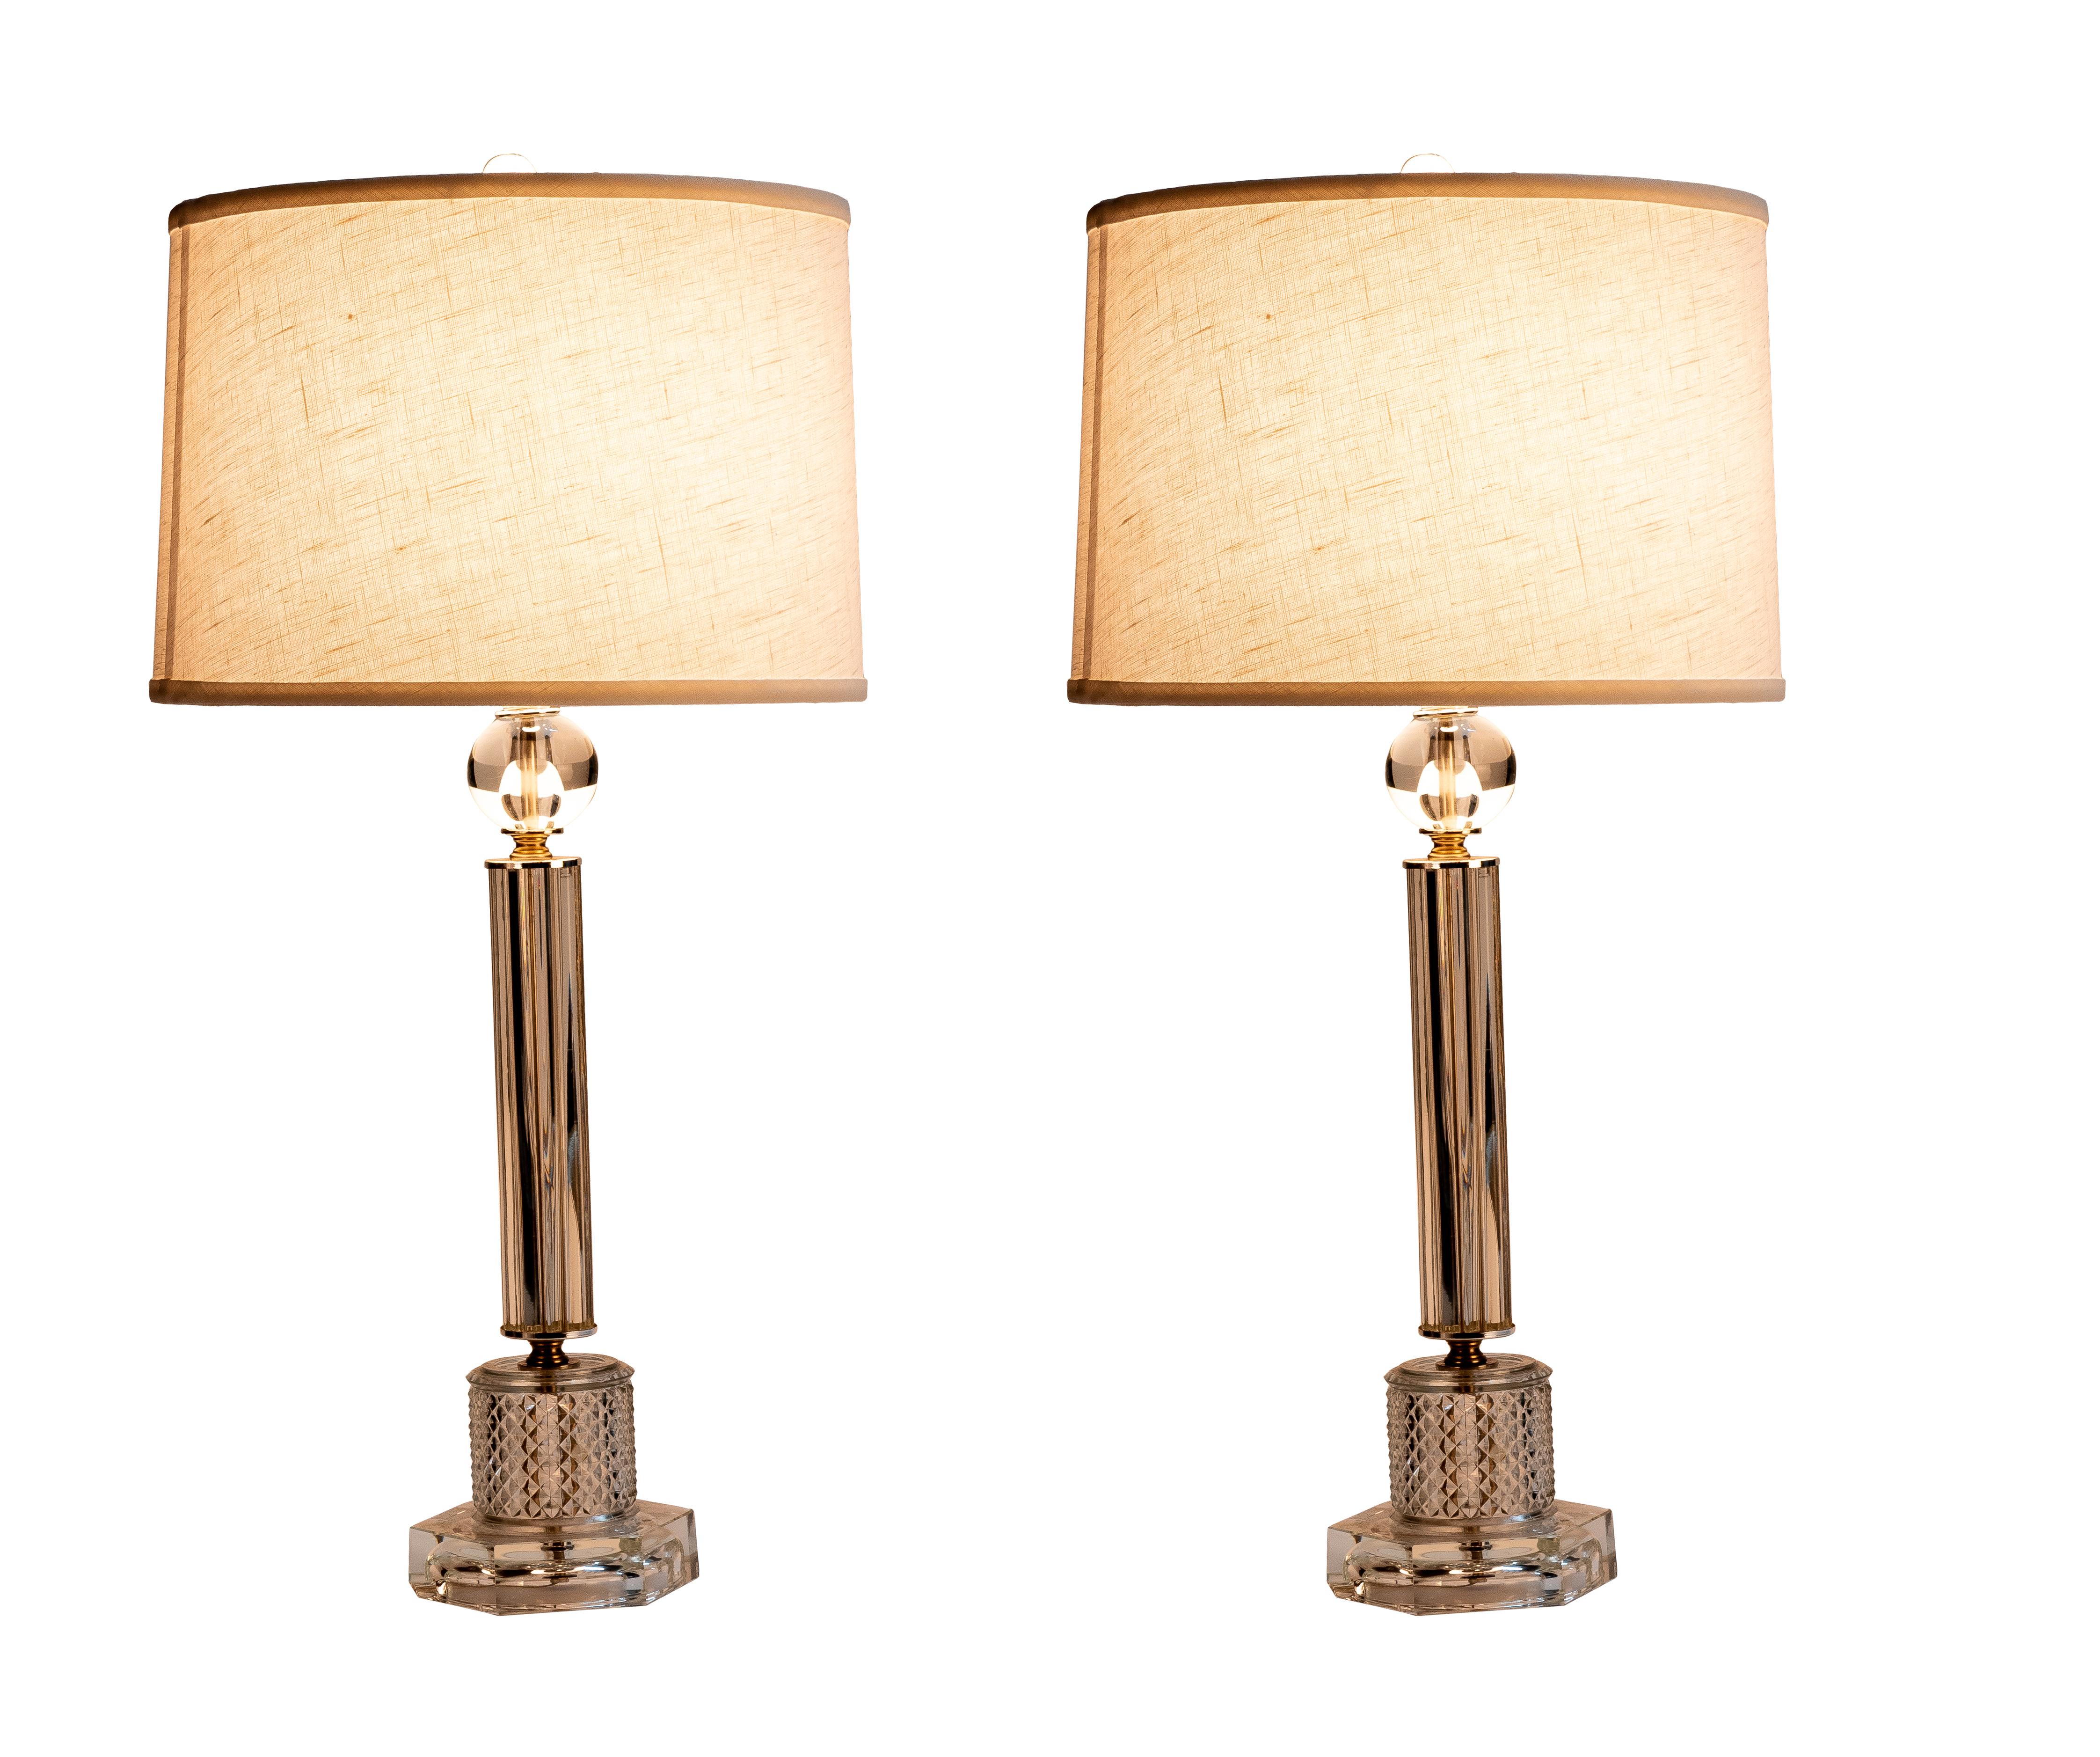 Cette paire luxueuse de lampes de table en cristal empilées des années 1940 présente un design en forme de colonne.

Fabriqué en Italie, vers 1940.